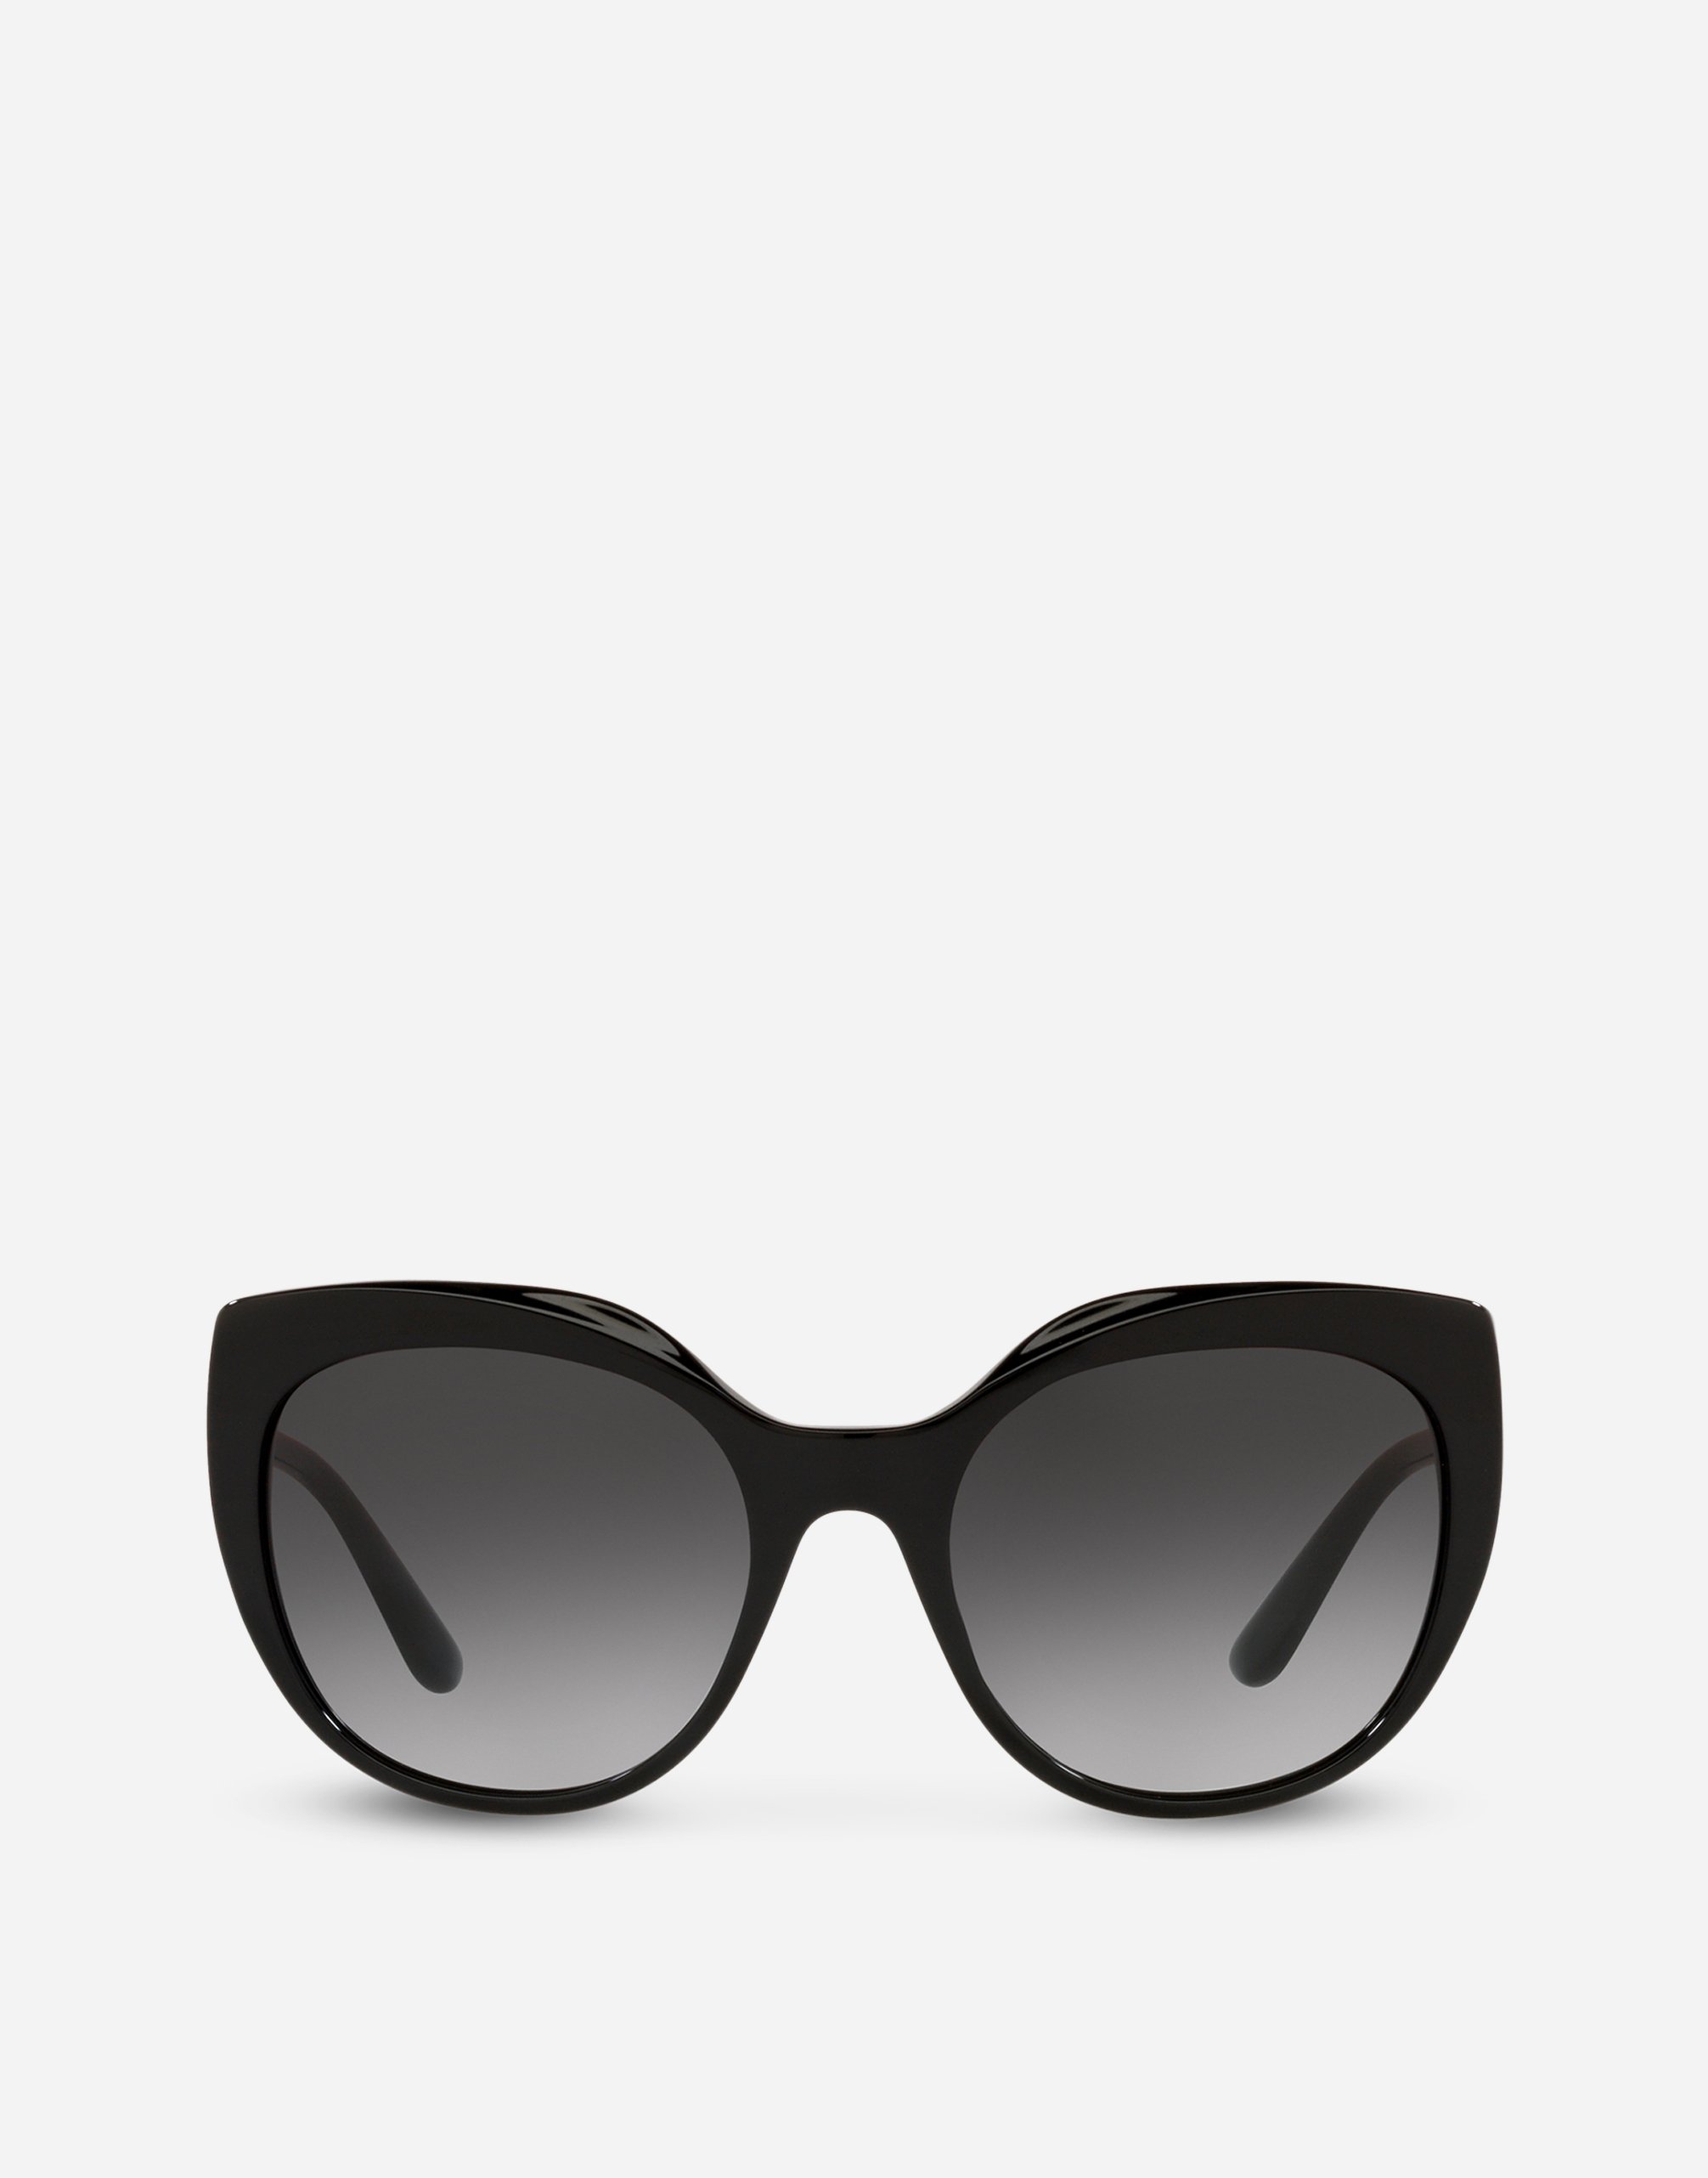 DG crossed sunglasses  in Black